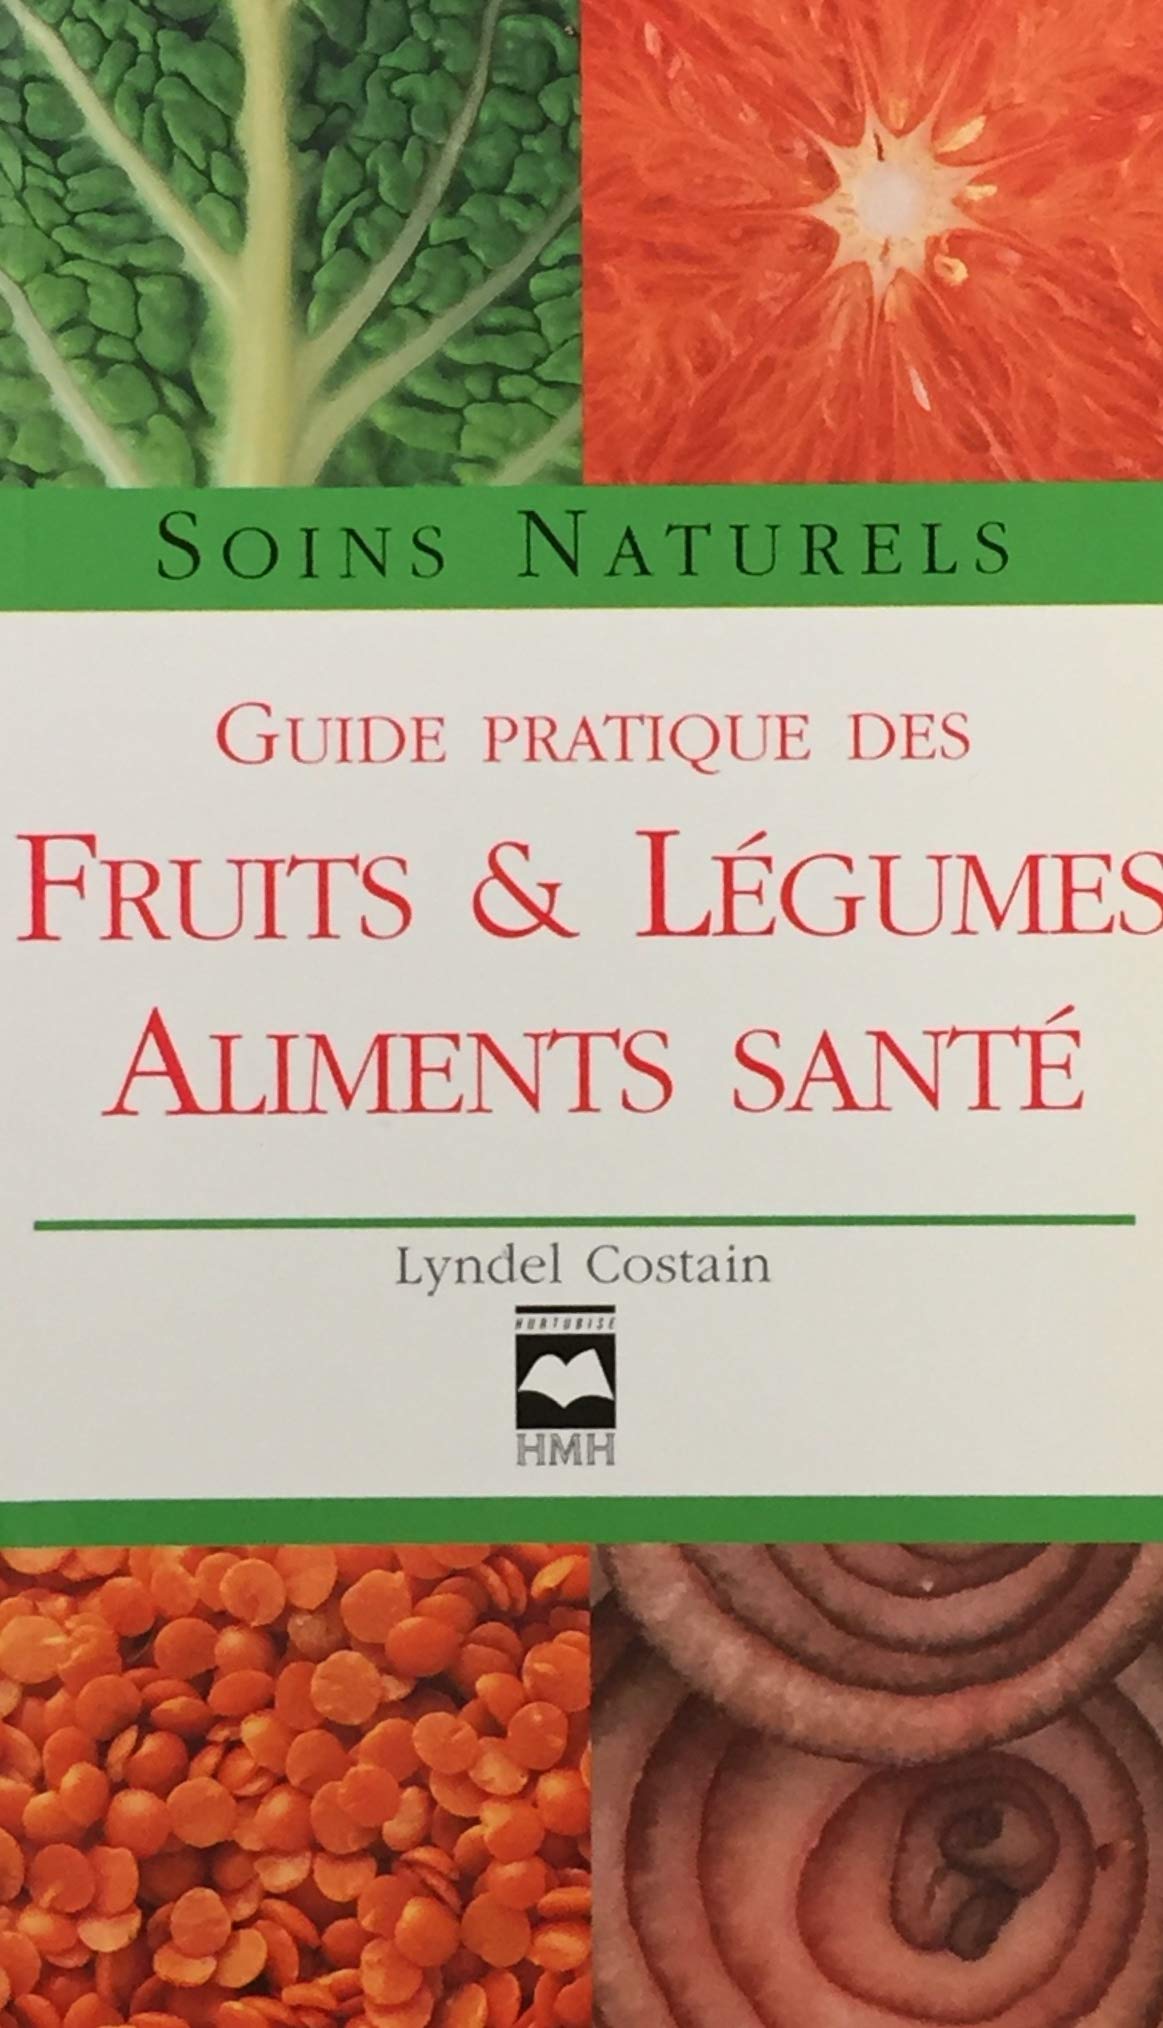 Livre ISBN 2894284993 Soins naturels : Guide pratique des fruits et légumes - Aliments santé (Lyndel Costain)